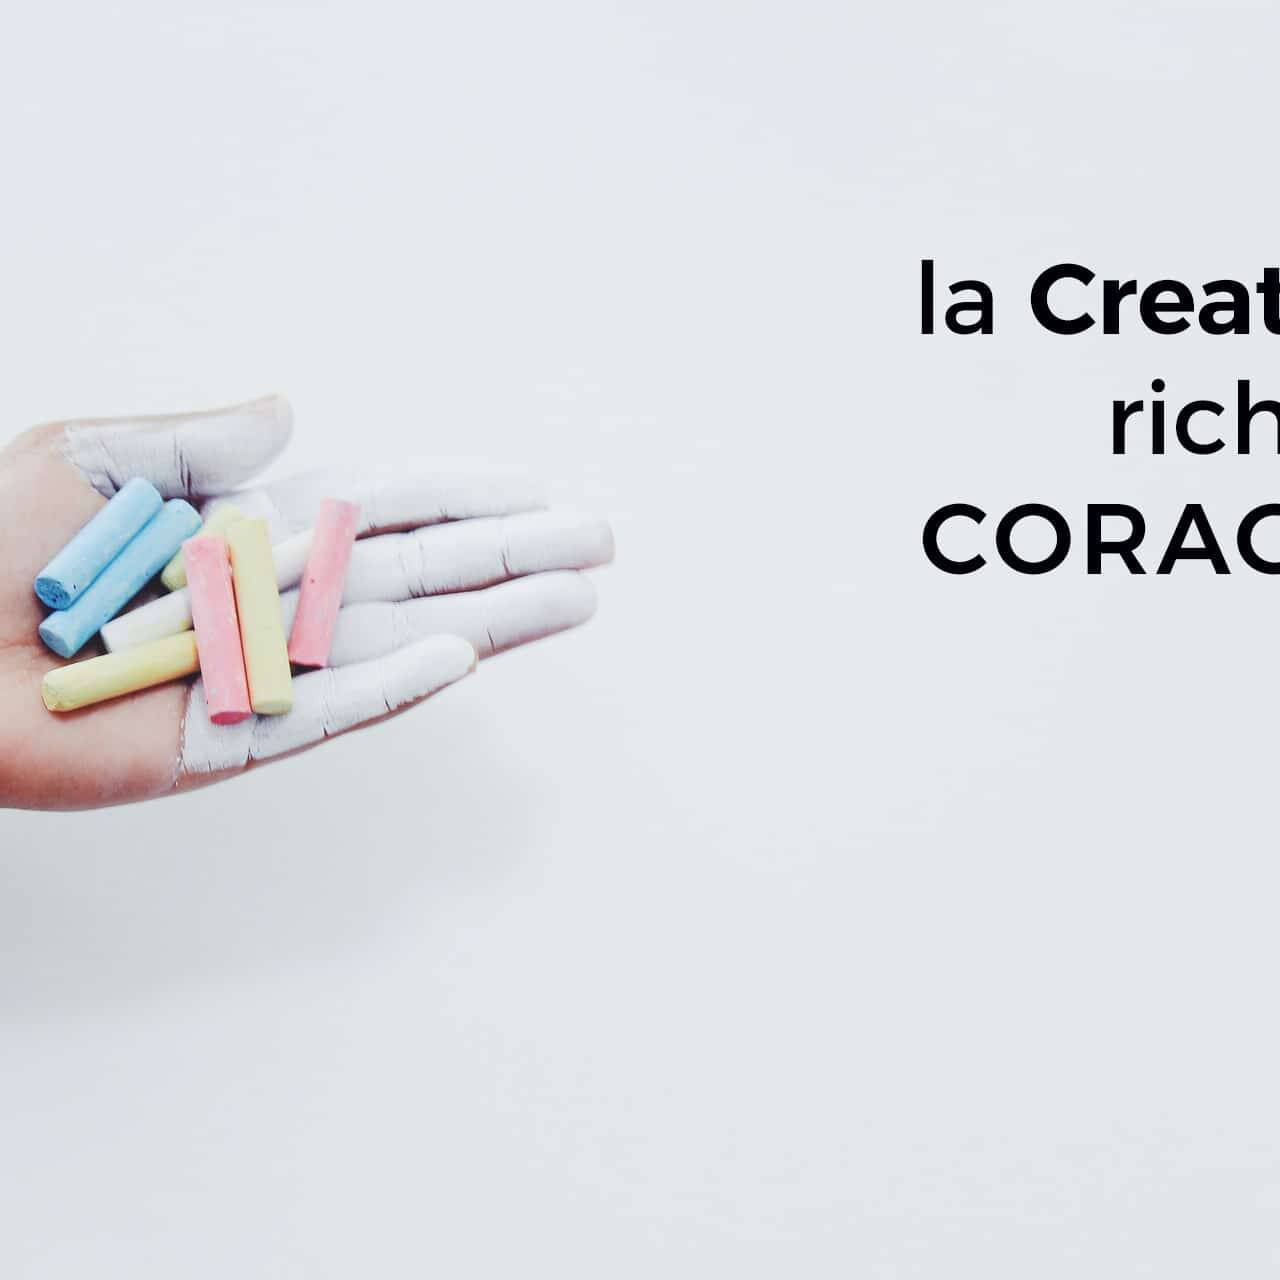 Crowdfunding e Social Network - immagine di una mano che tiene nel palmo gessetti colorati e la frase di Henri Matisse " la creatività richiede coraggio"